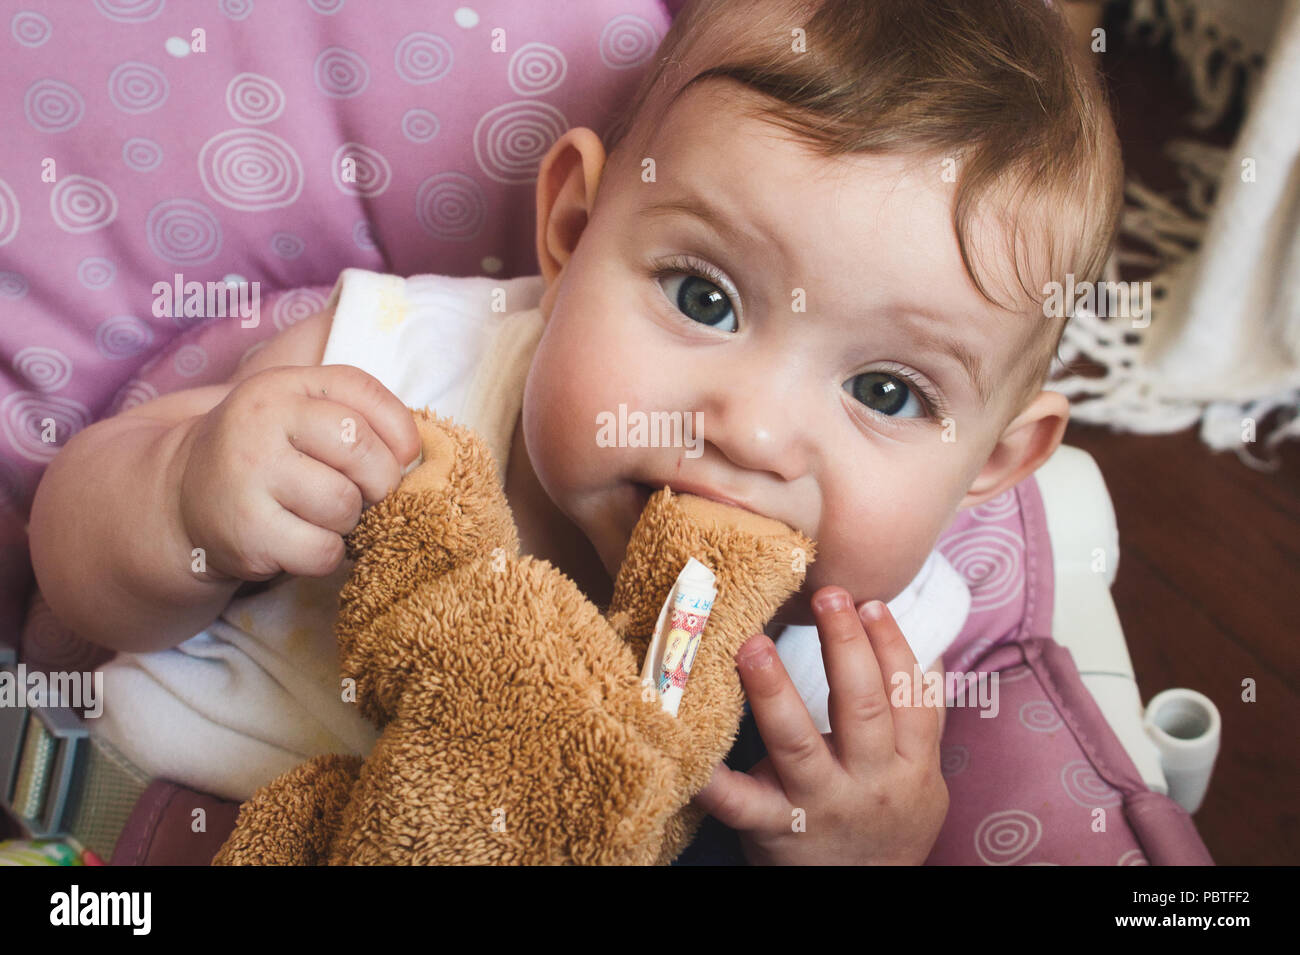 cute babies with teddy bear